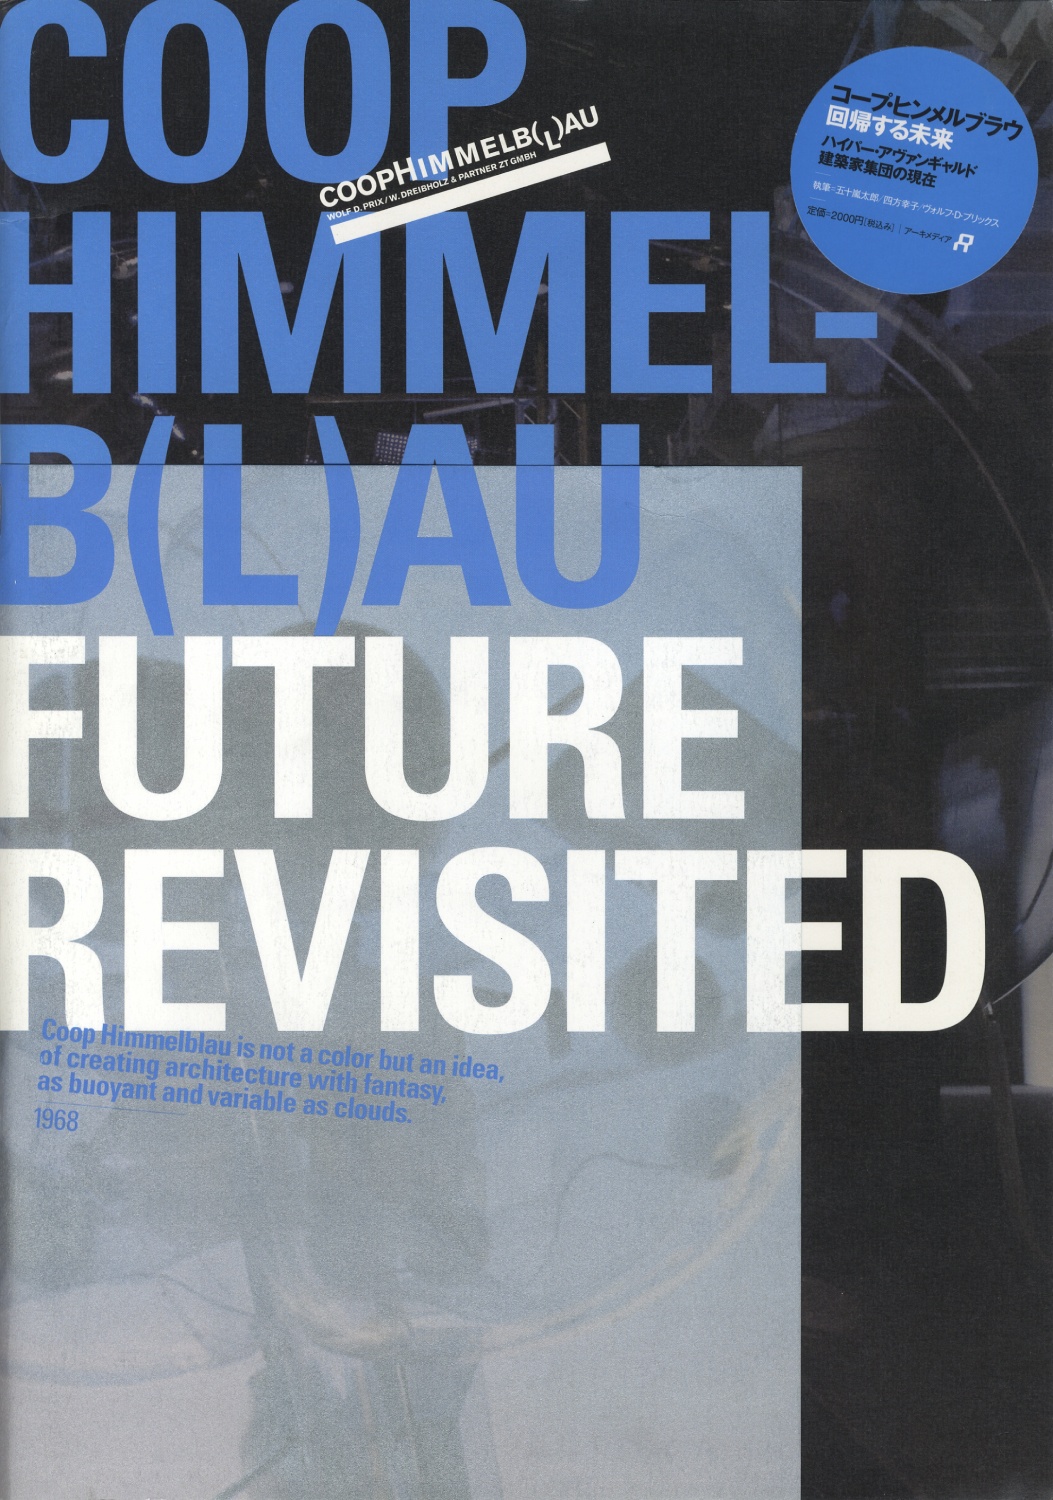 コープ・ヒンメルブラウ：回帰する未来　COOP HIMMELB(L)AU: FUTURE REVISITED